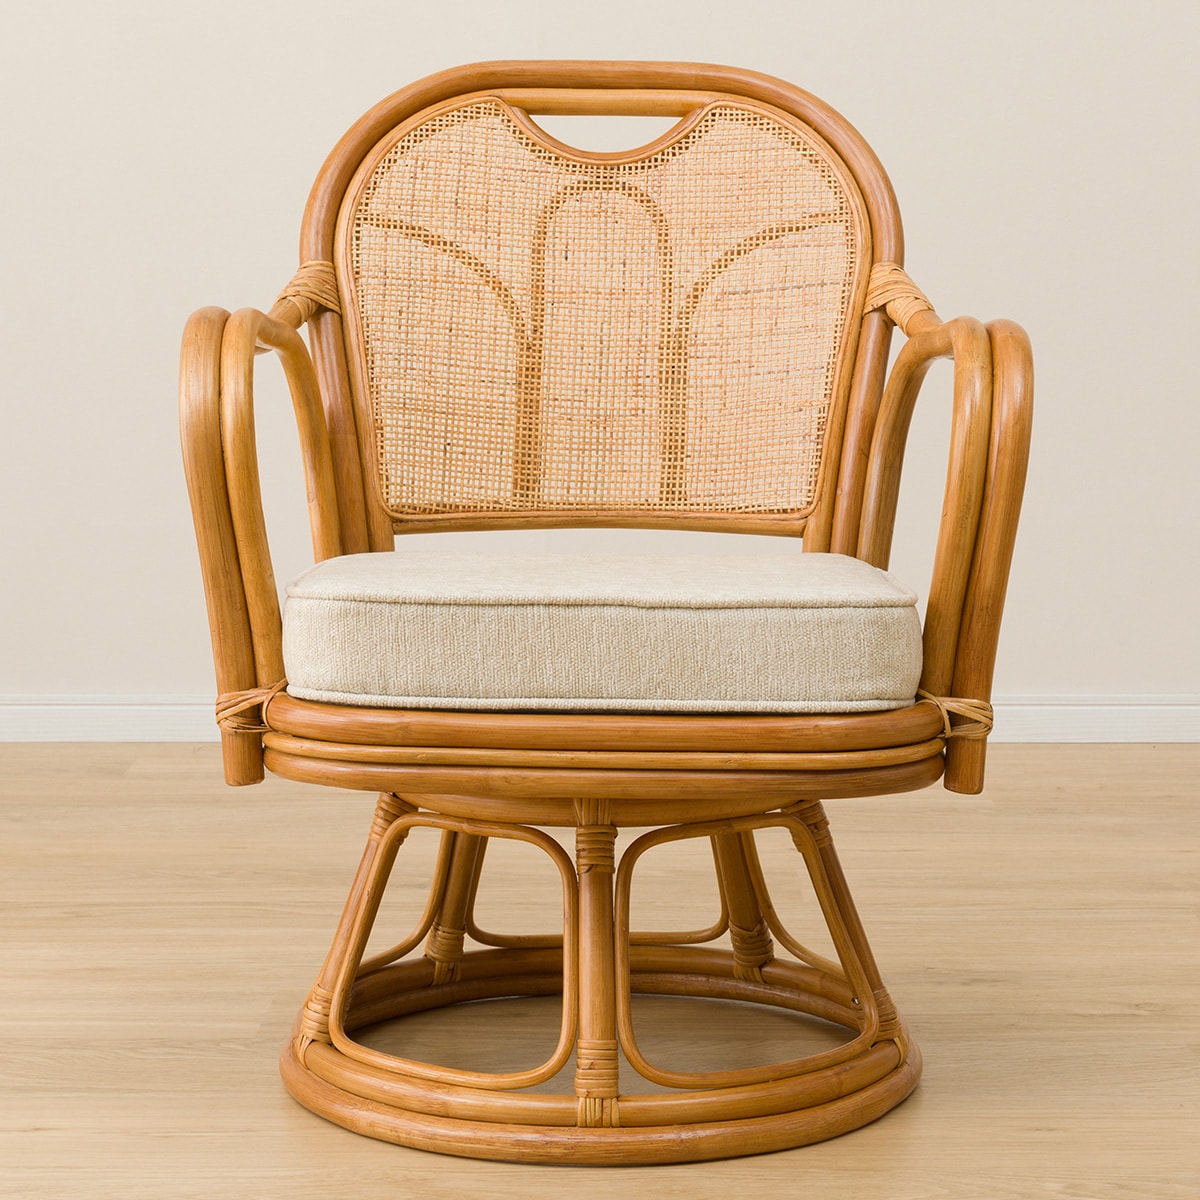 おすすめの籐椅子12選 ニトリの藤の椅子やリクライニングする藤椅子も紹介